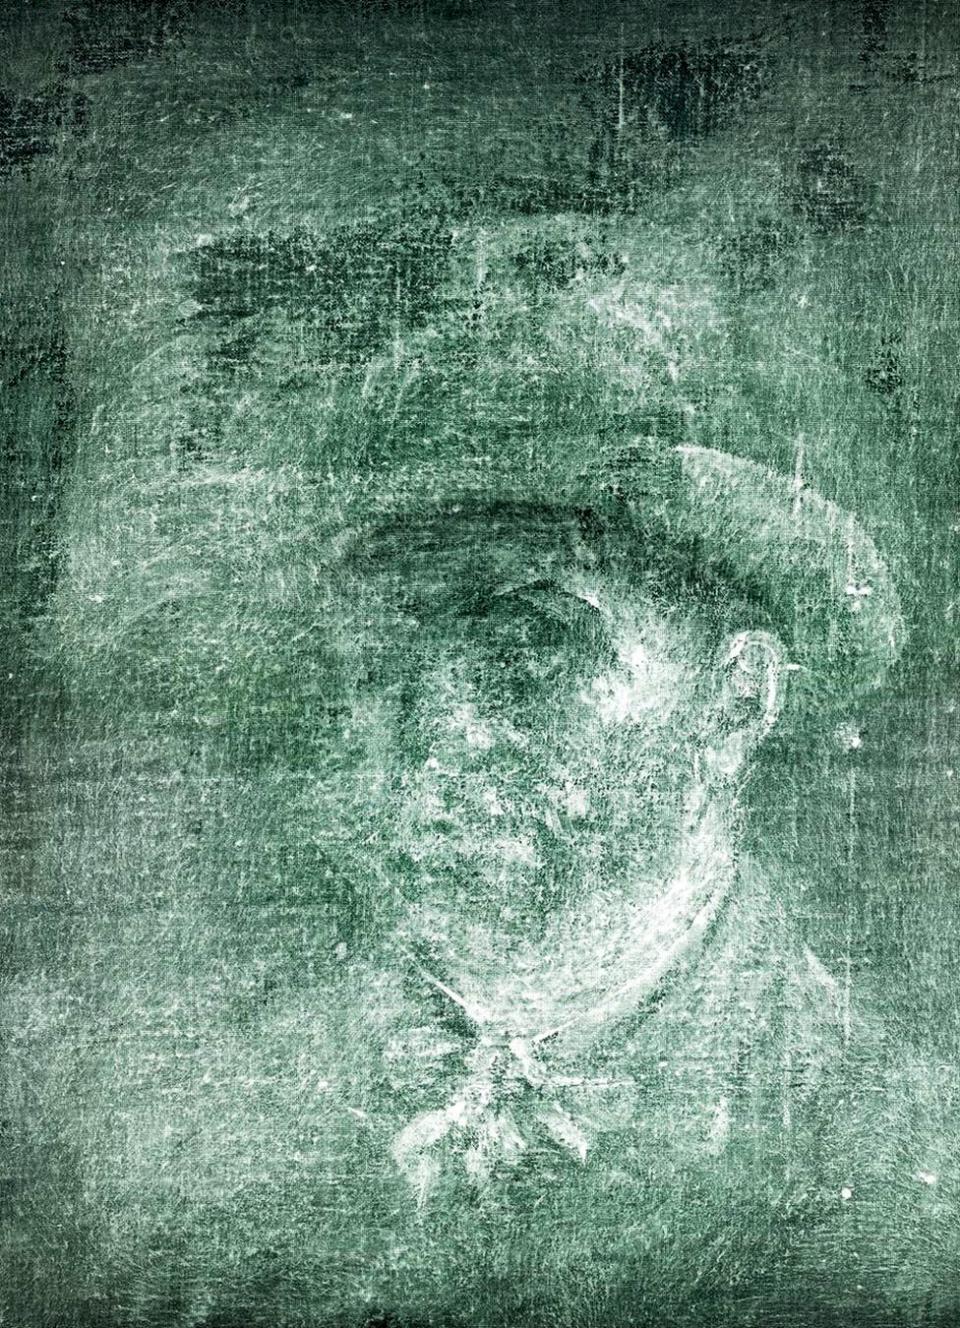 英國蘇格蘭國家畫廊宣布，在荷蘭後印象派畫家梵谷的一幅畫作後面，發現另一幅先前未知的梵谷自畫像。(圖取自推特)